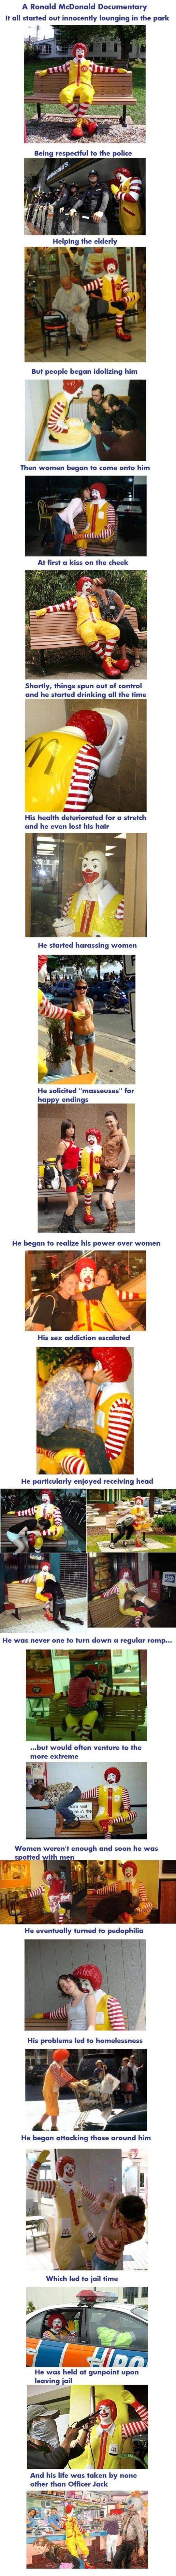 Sammanfattning av Ronald McDonalds liv